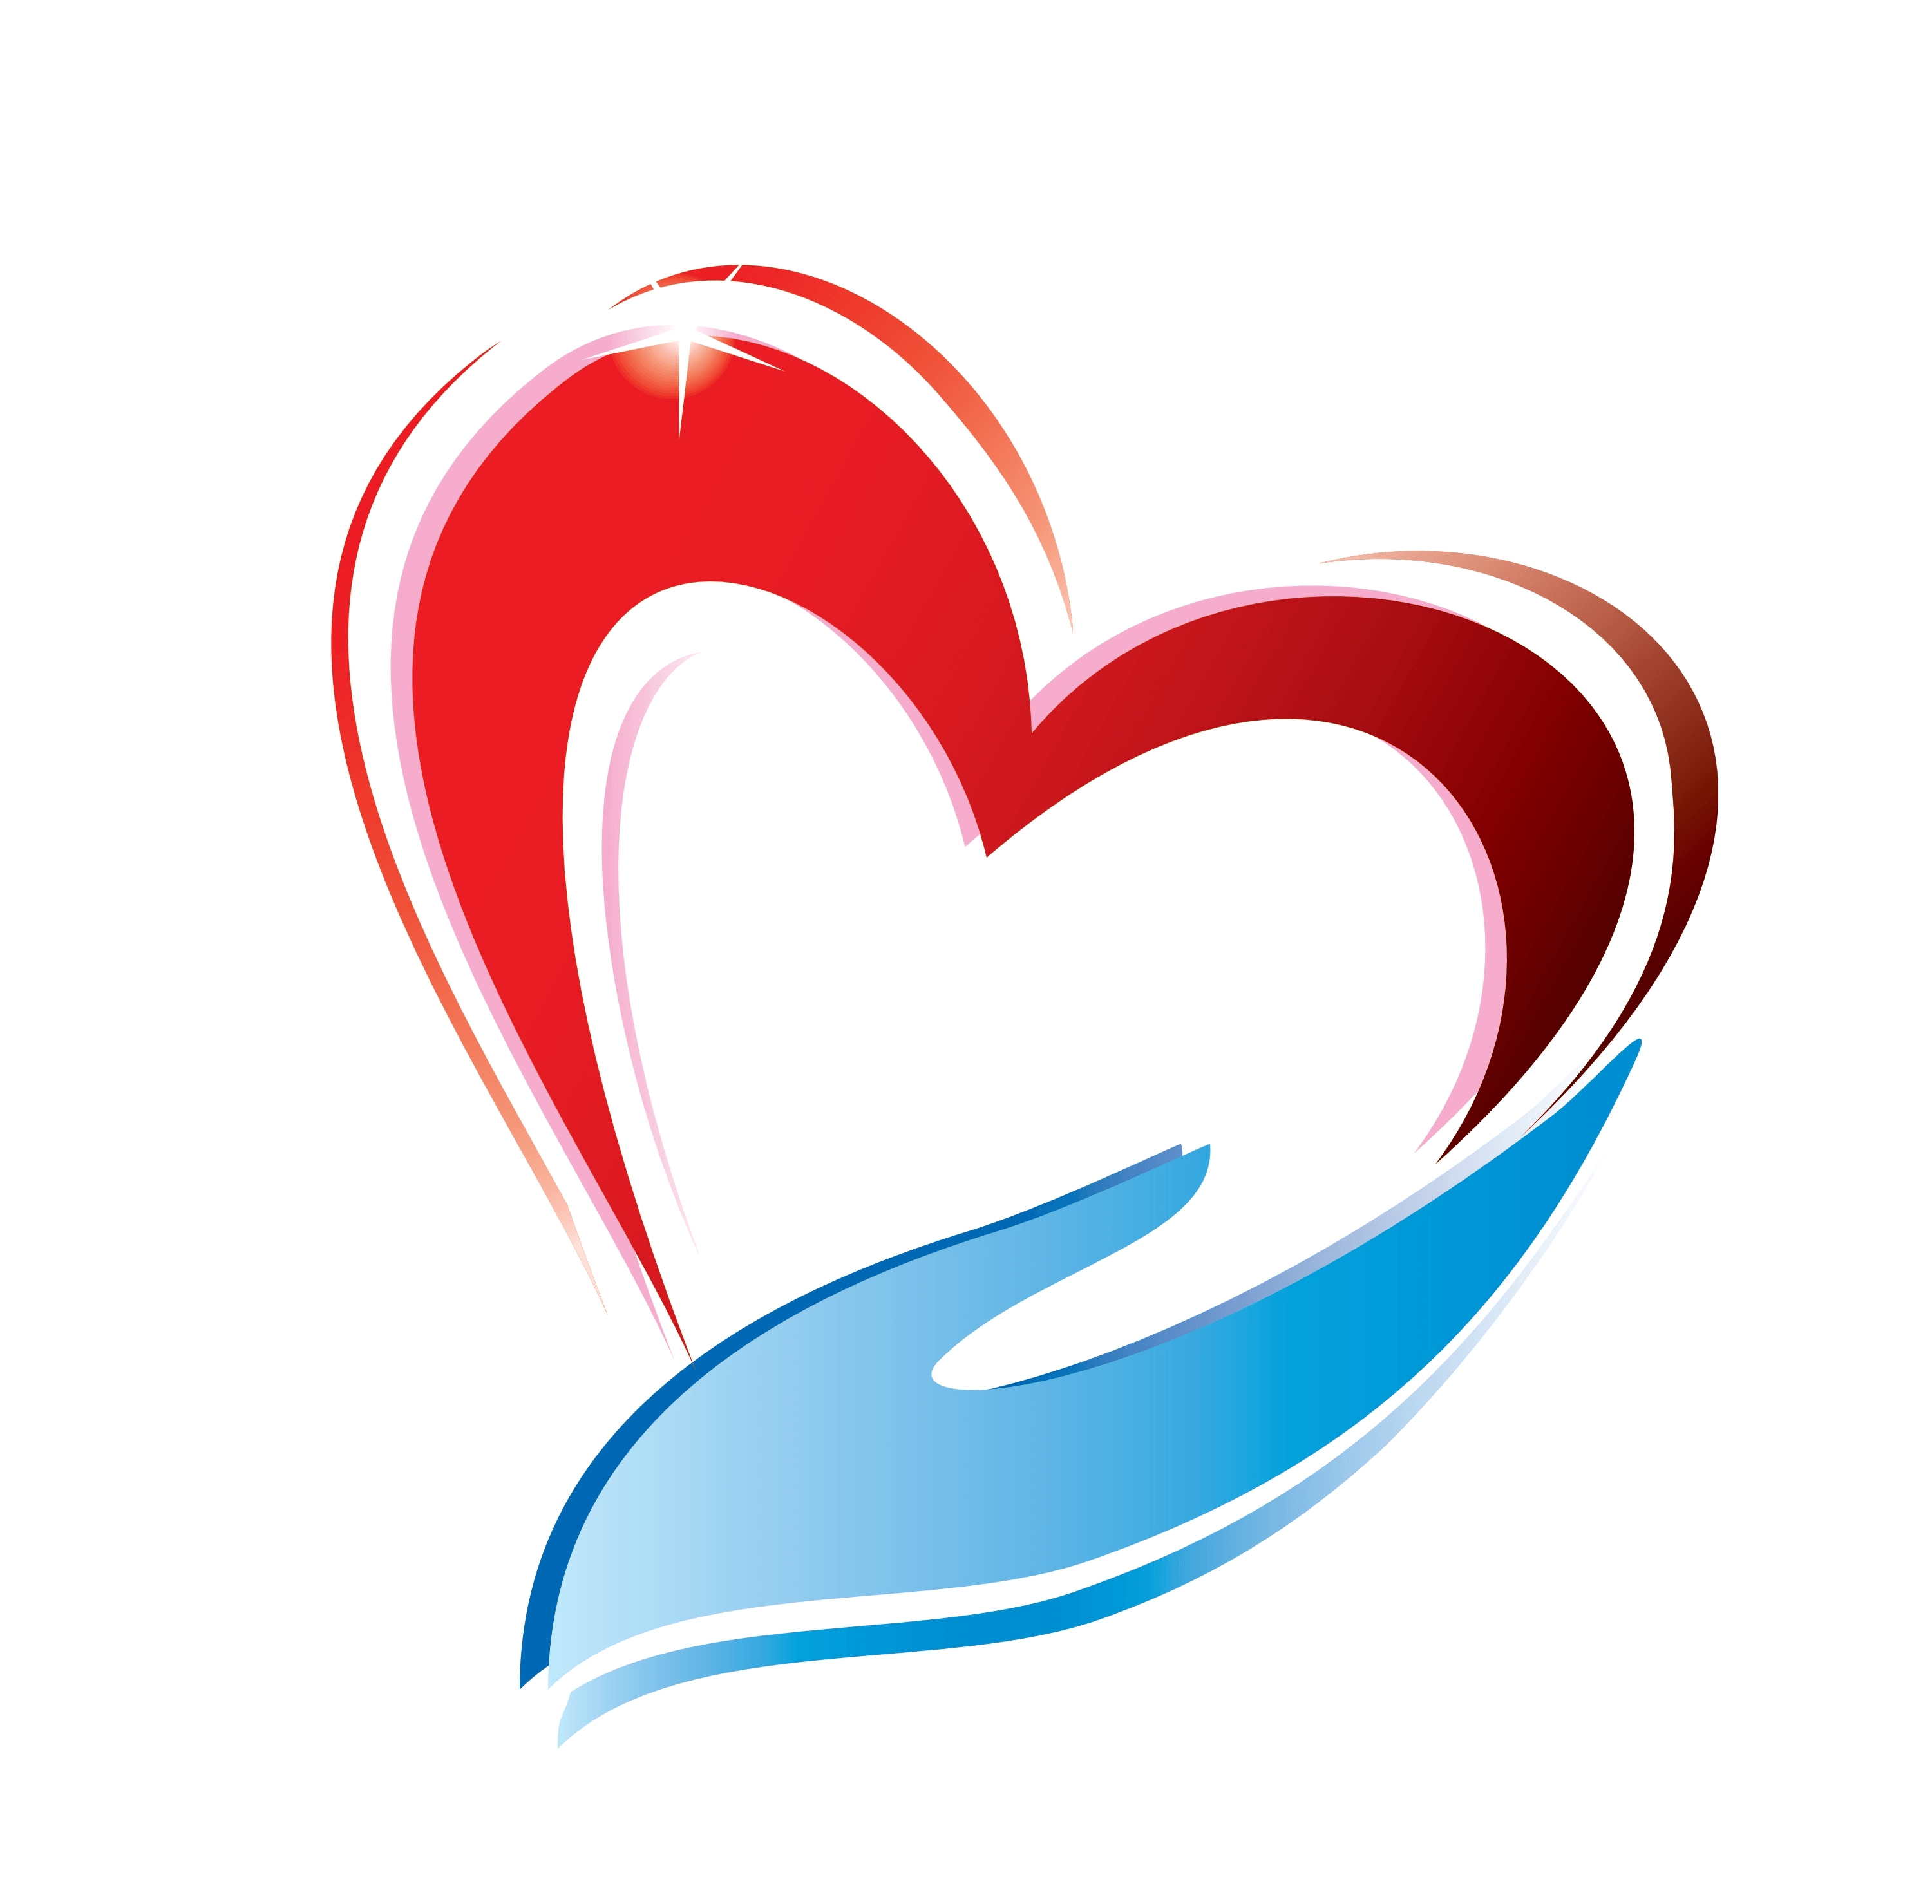 3 Heart Logo - Pin by Marinka Willig on Hearts | Pinterest | Heart, Heart logo and ...